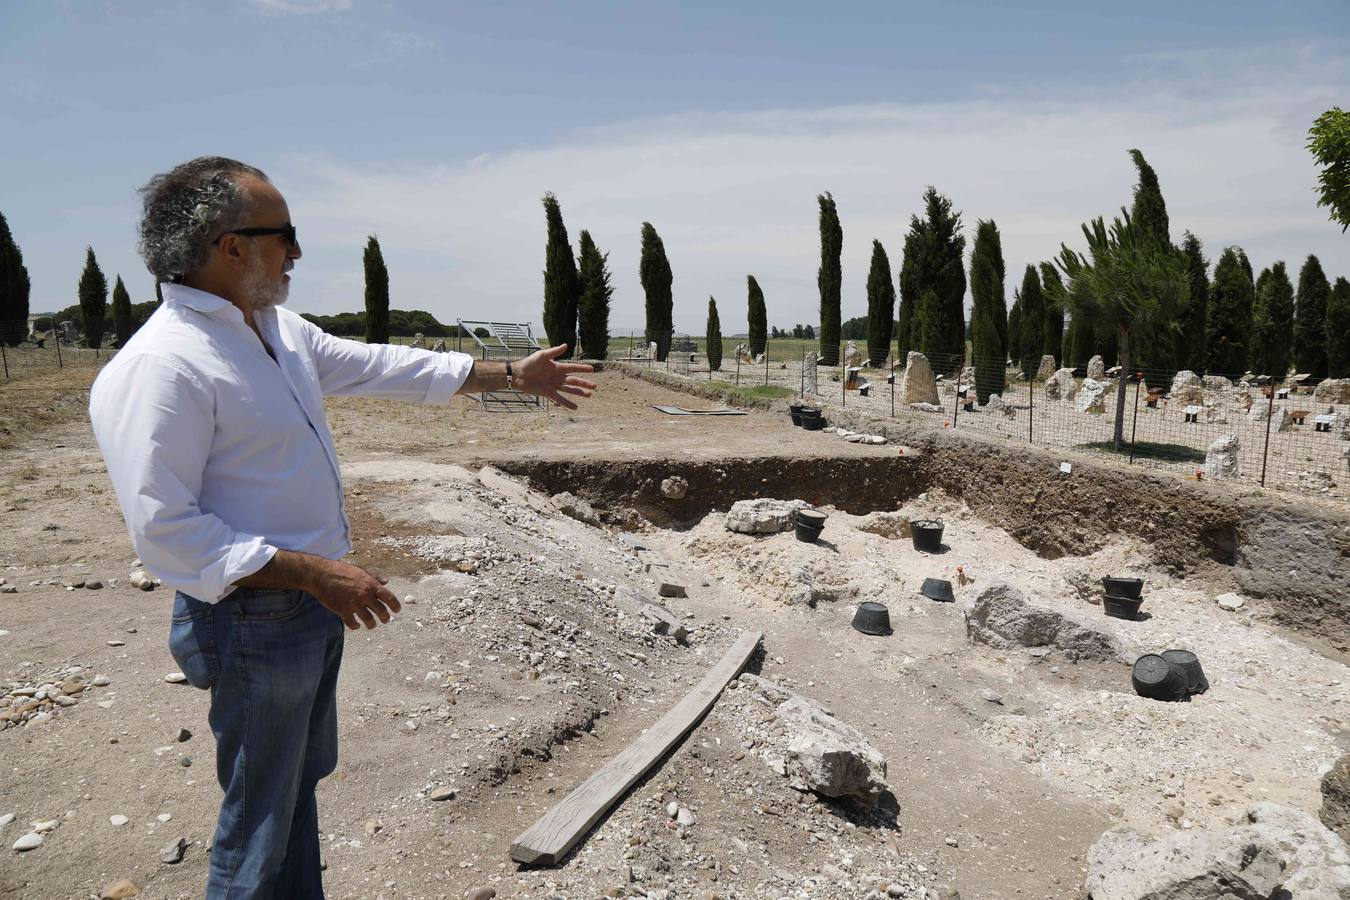 La campaña de verano en el yacimiento arqueológico de la localidad vallisoletana de Padilla de Duero ha deparado el descubrimiento de cuatro tumbas del siglo II antes de Cristo en la necrópolis vacceo romana de Las Ruedas